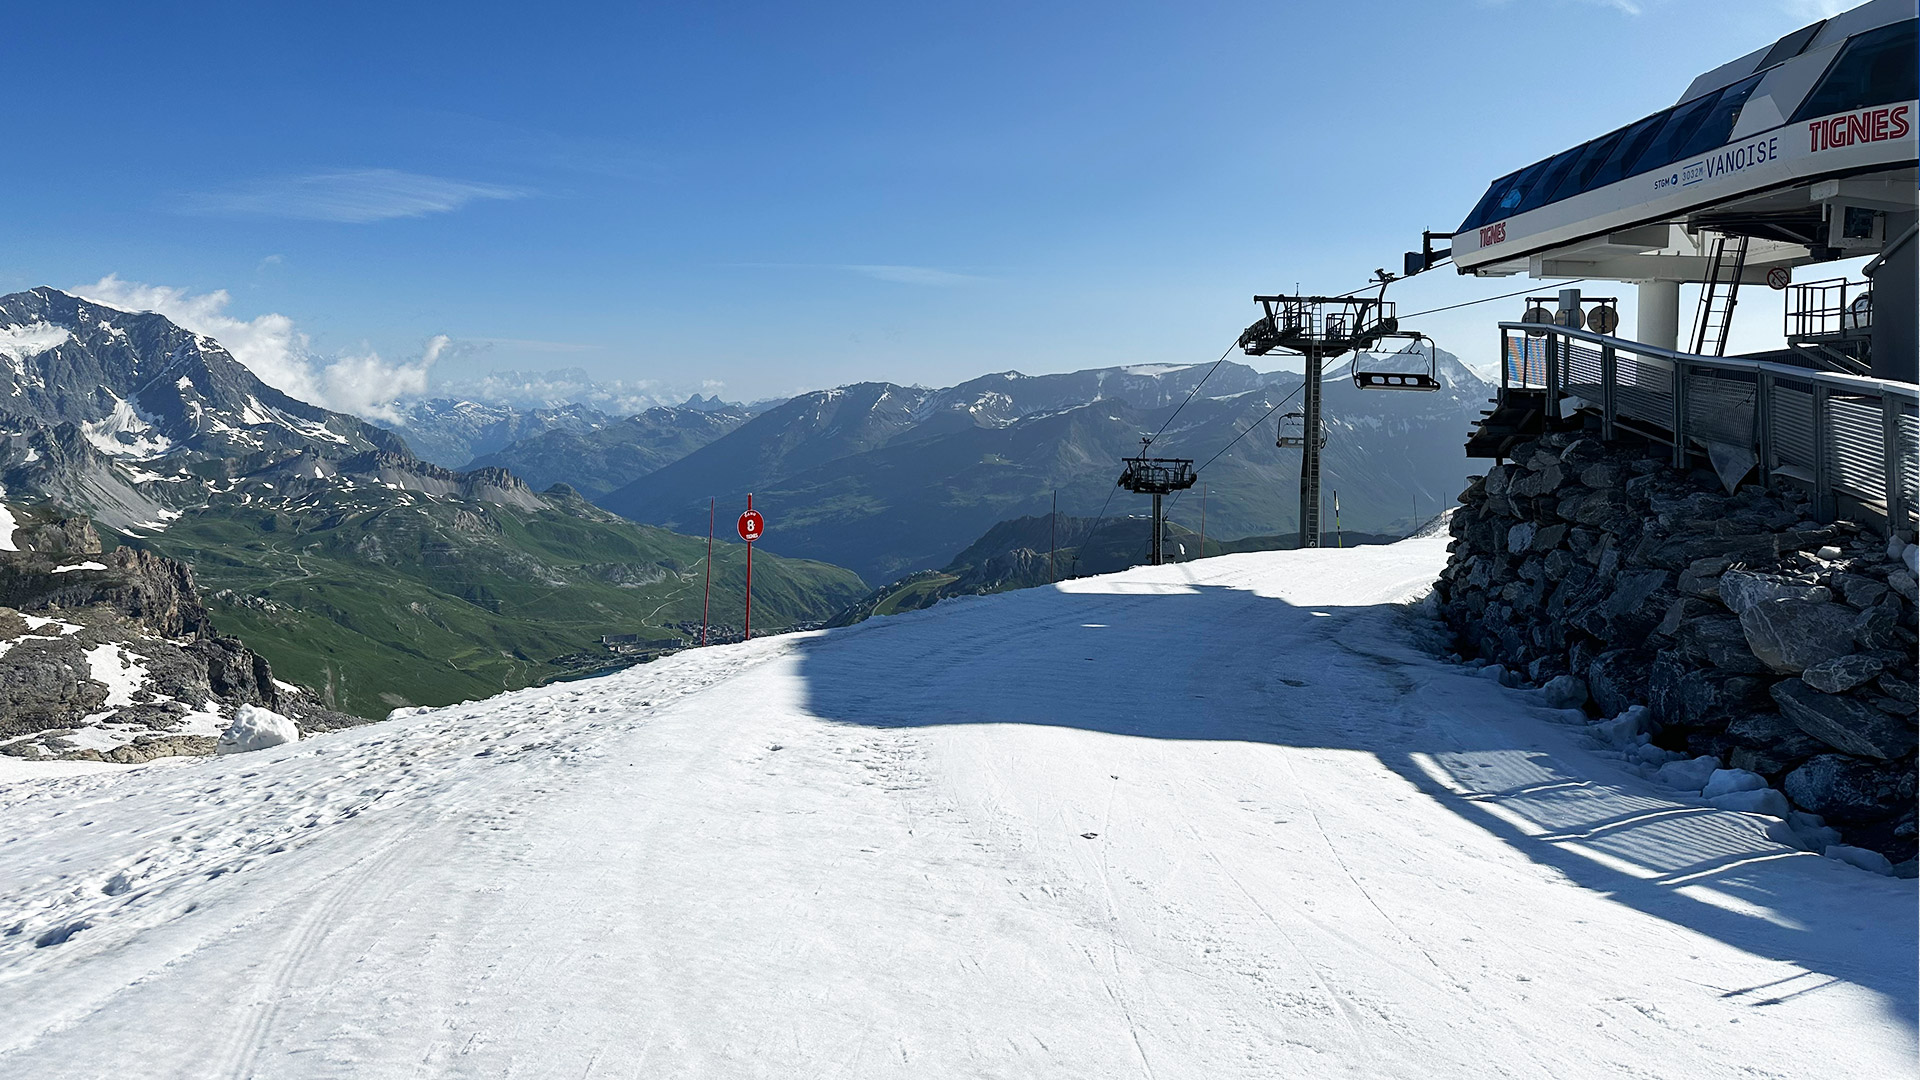 Ski lifts are open for Summer skiing on Tignes' Grande Motte glacier